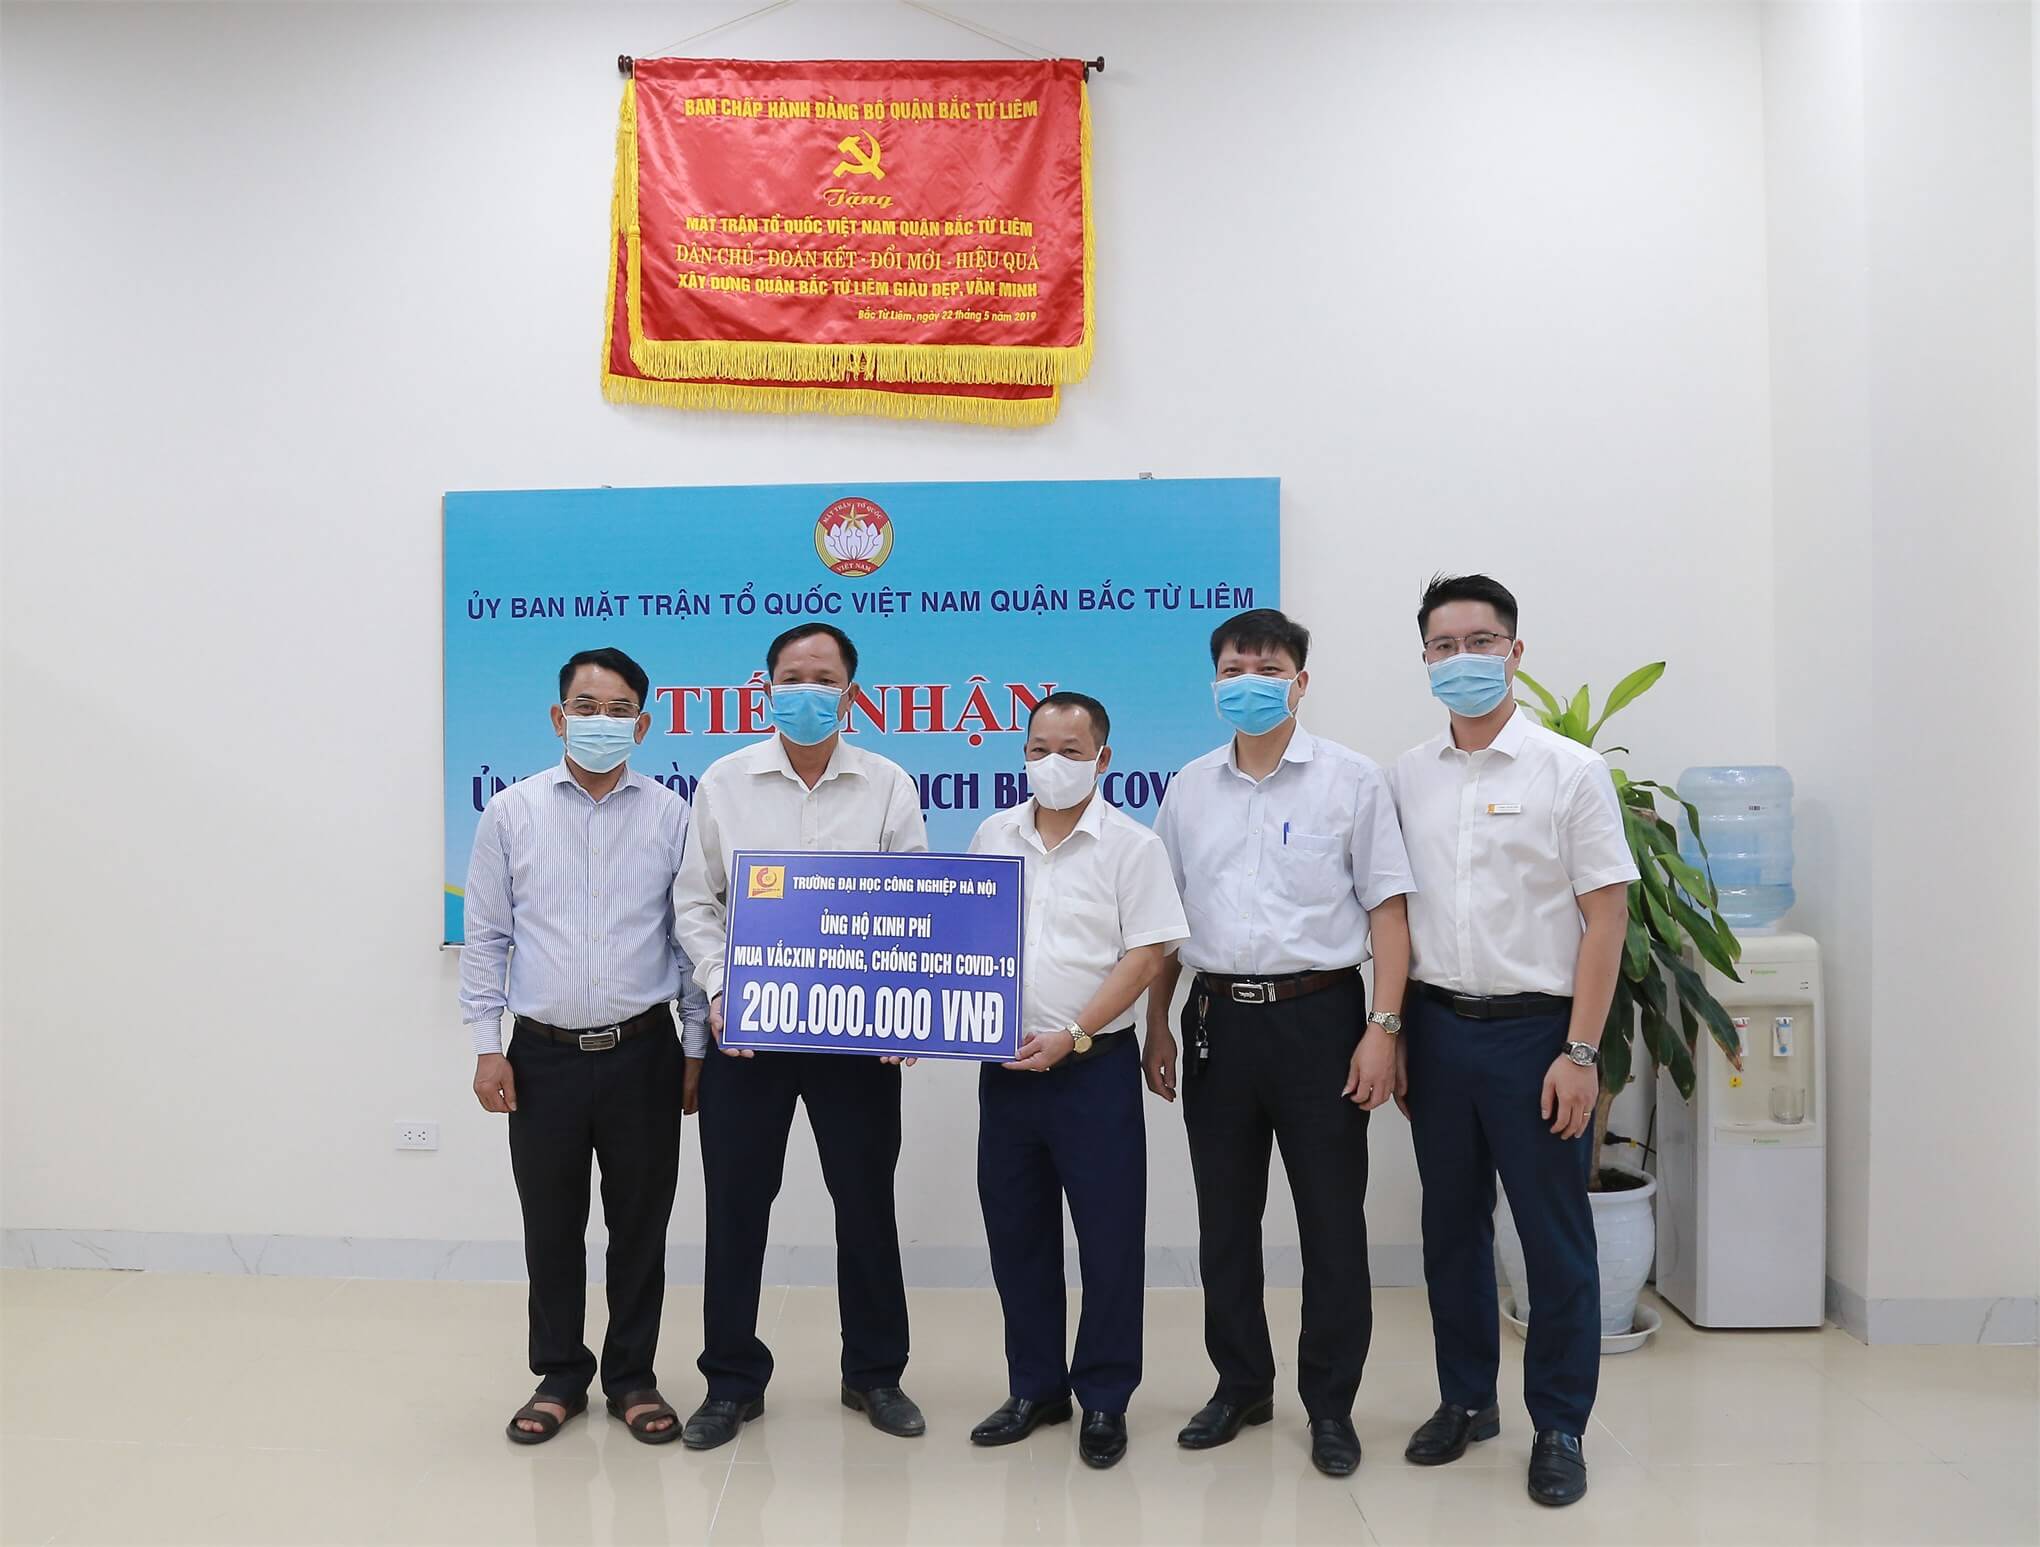 Đại học Công nghiệp Hà Nội (HaUI) ủng hộ 200 triệu đồng cho “Quỹ vắc-xin phòng chống COVID-19” tại UBMTTQVN quận Bắc Từ Liêm